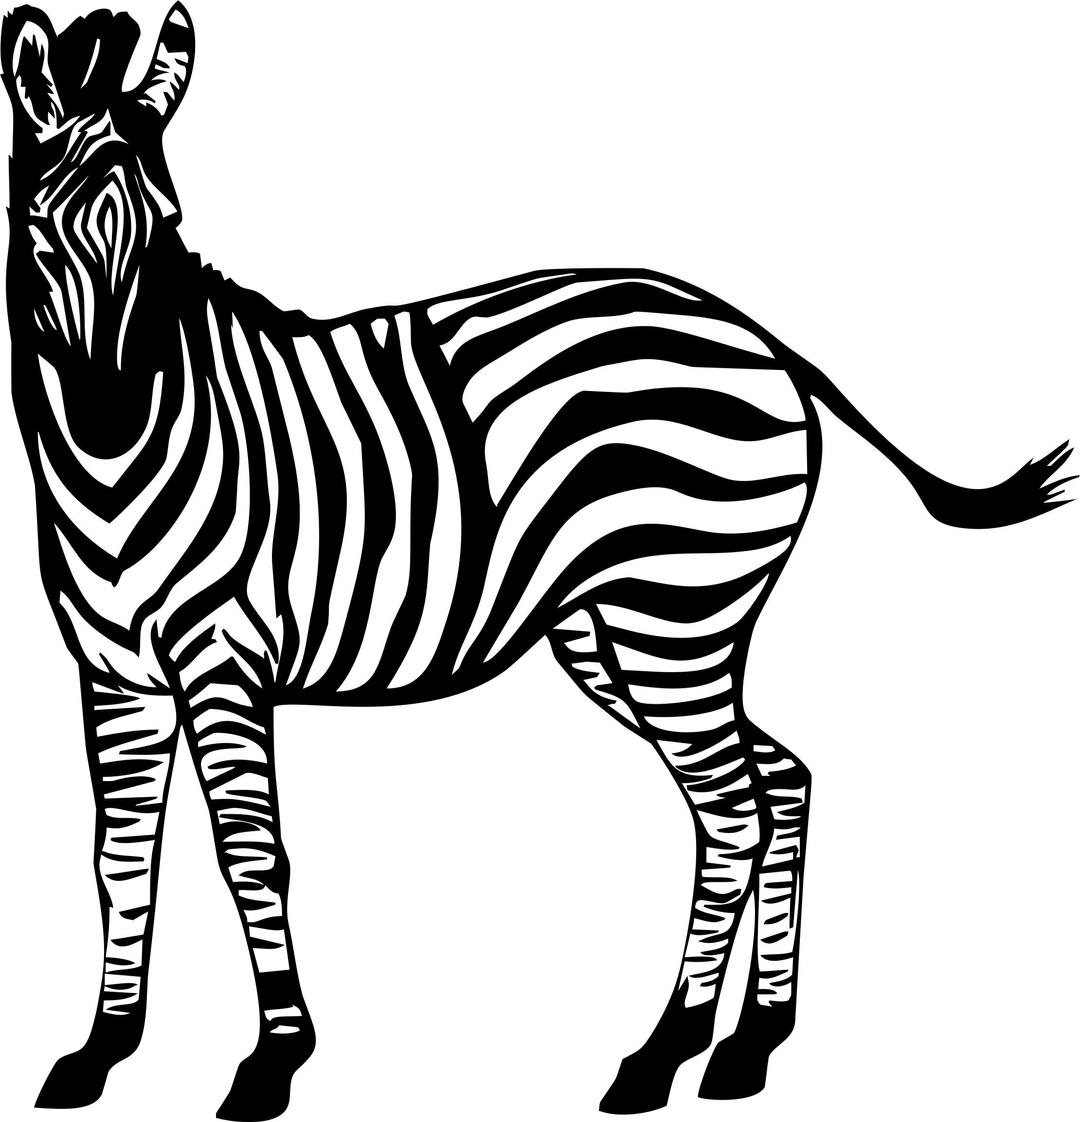 Zebra Illustration png transparent